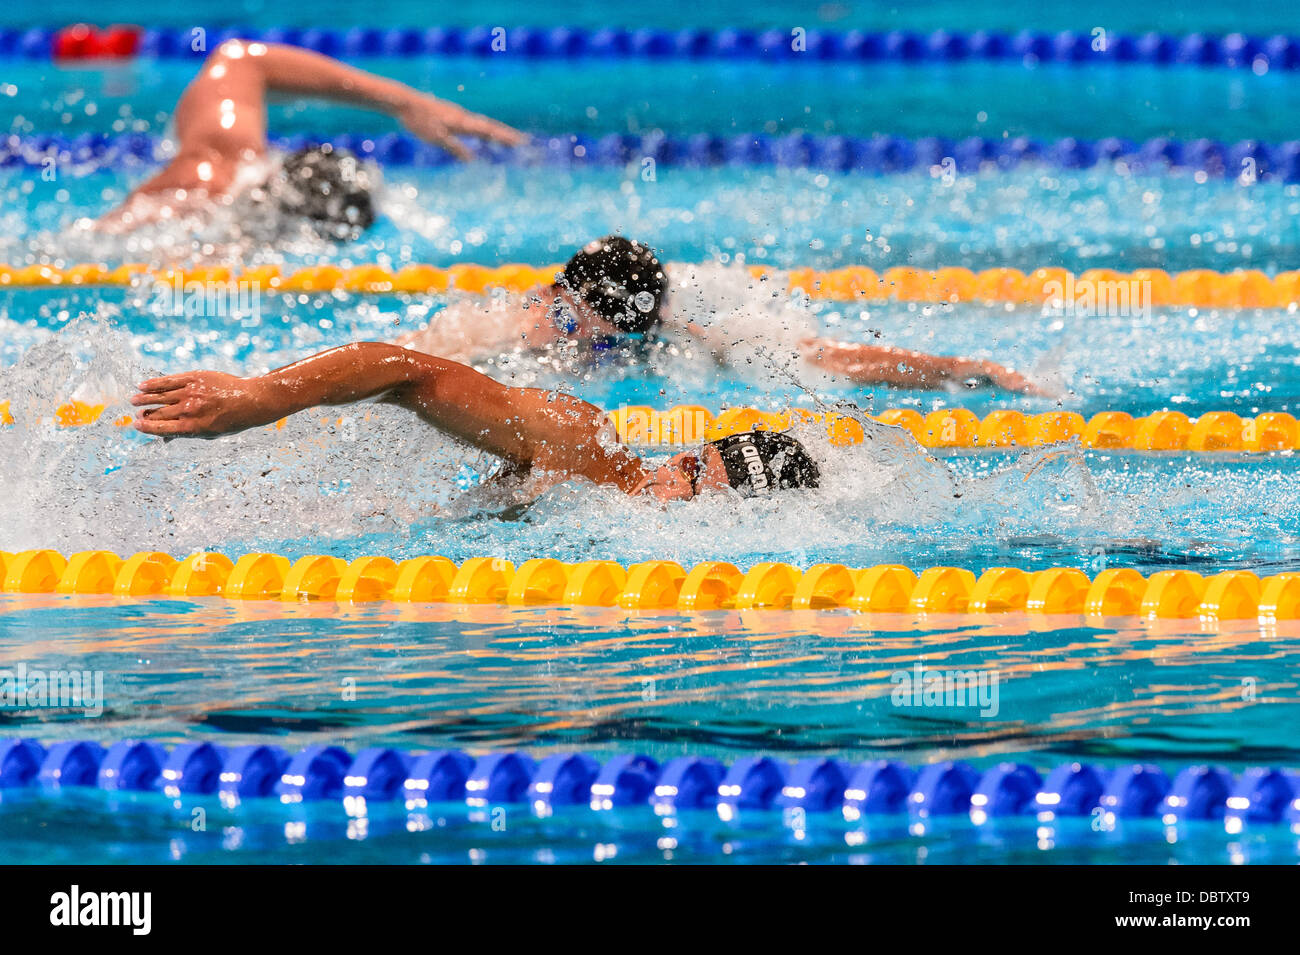 Barcelone, Espagne. Août 4th, 2013 : Le Japon est en concurrence dans le Seto Daiya men's 400m quatre nages individuel à la 15e finale des Championnats du Monde FINA à Barcelone. Credit : matthi/Alamy Live News Banque D'Images